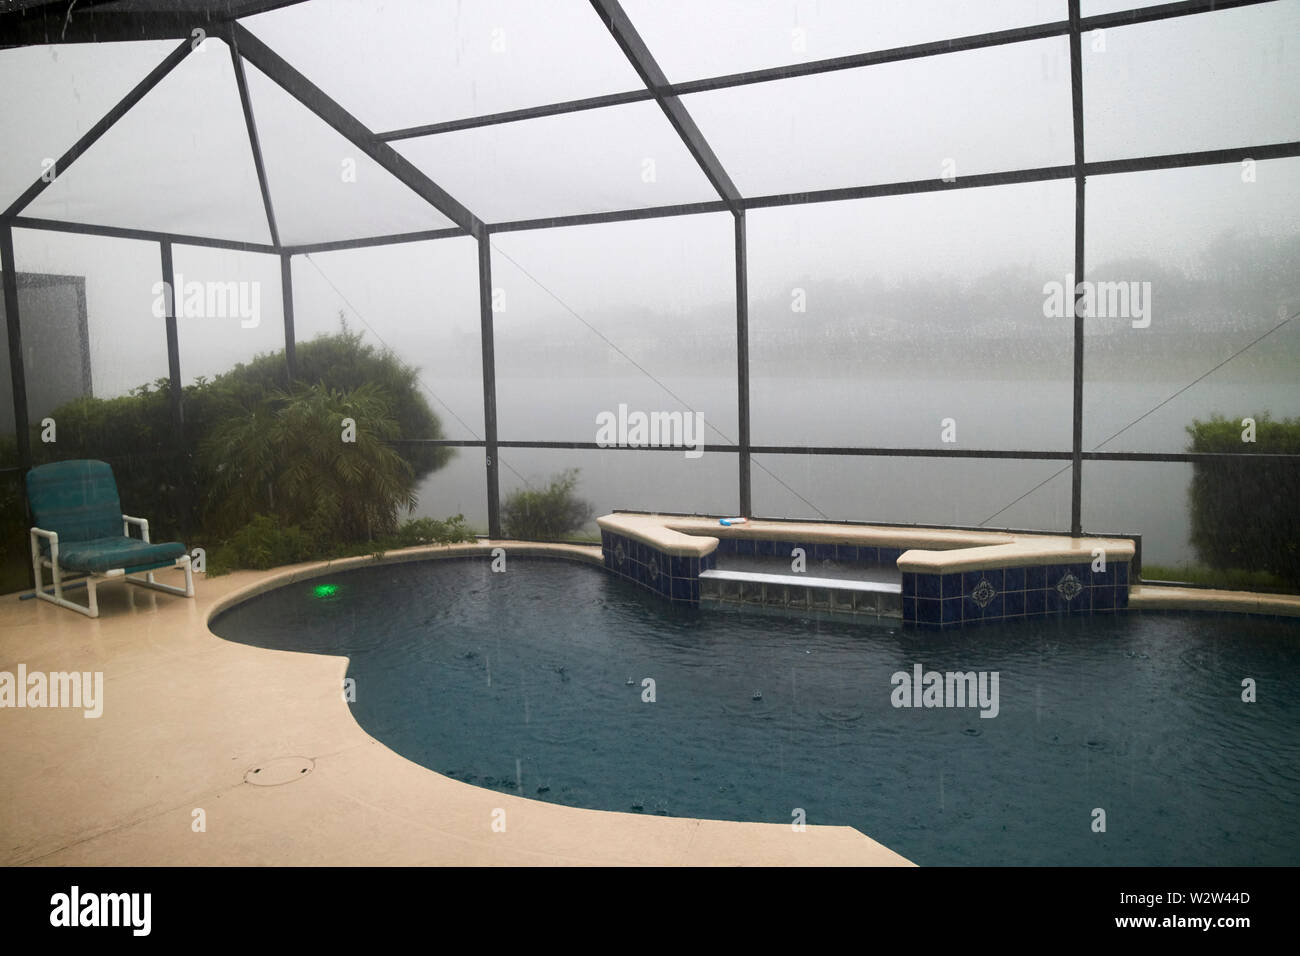 Pool und Gitter Käfig in der Mitte von einem regenguss Gewitter kissimmee Florida USA Vereinigte Staaten von Amerika Stockfoto